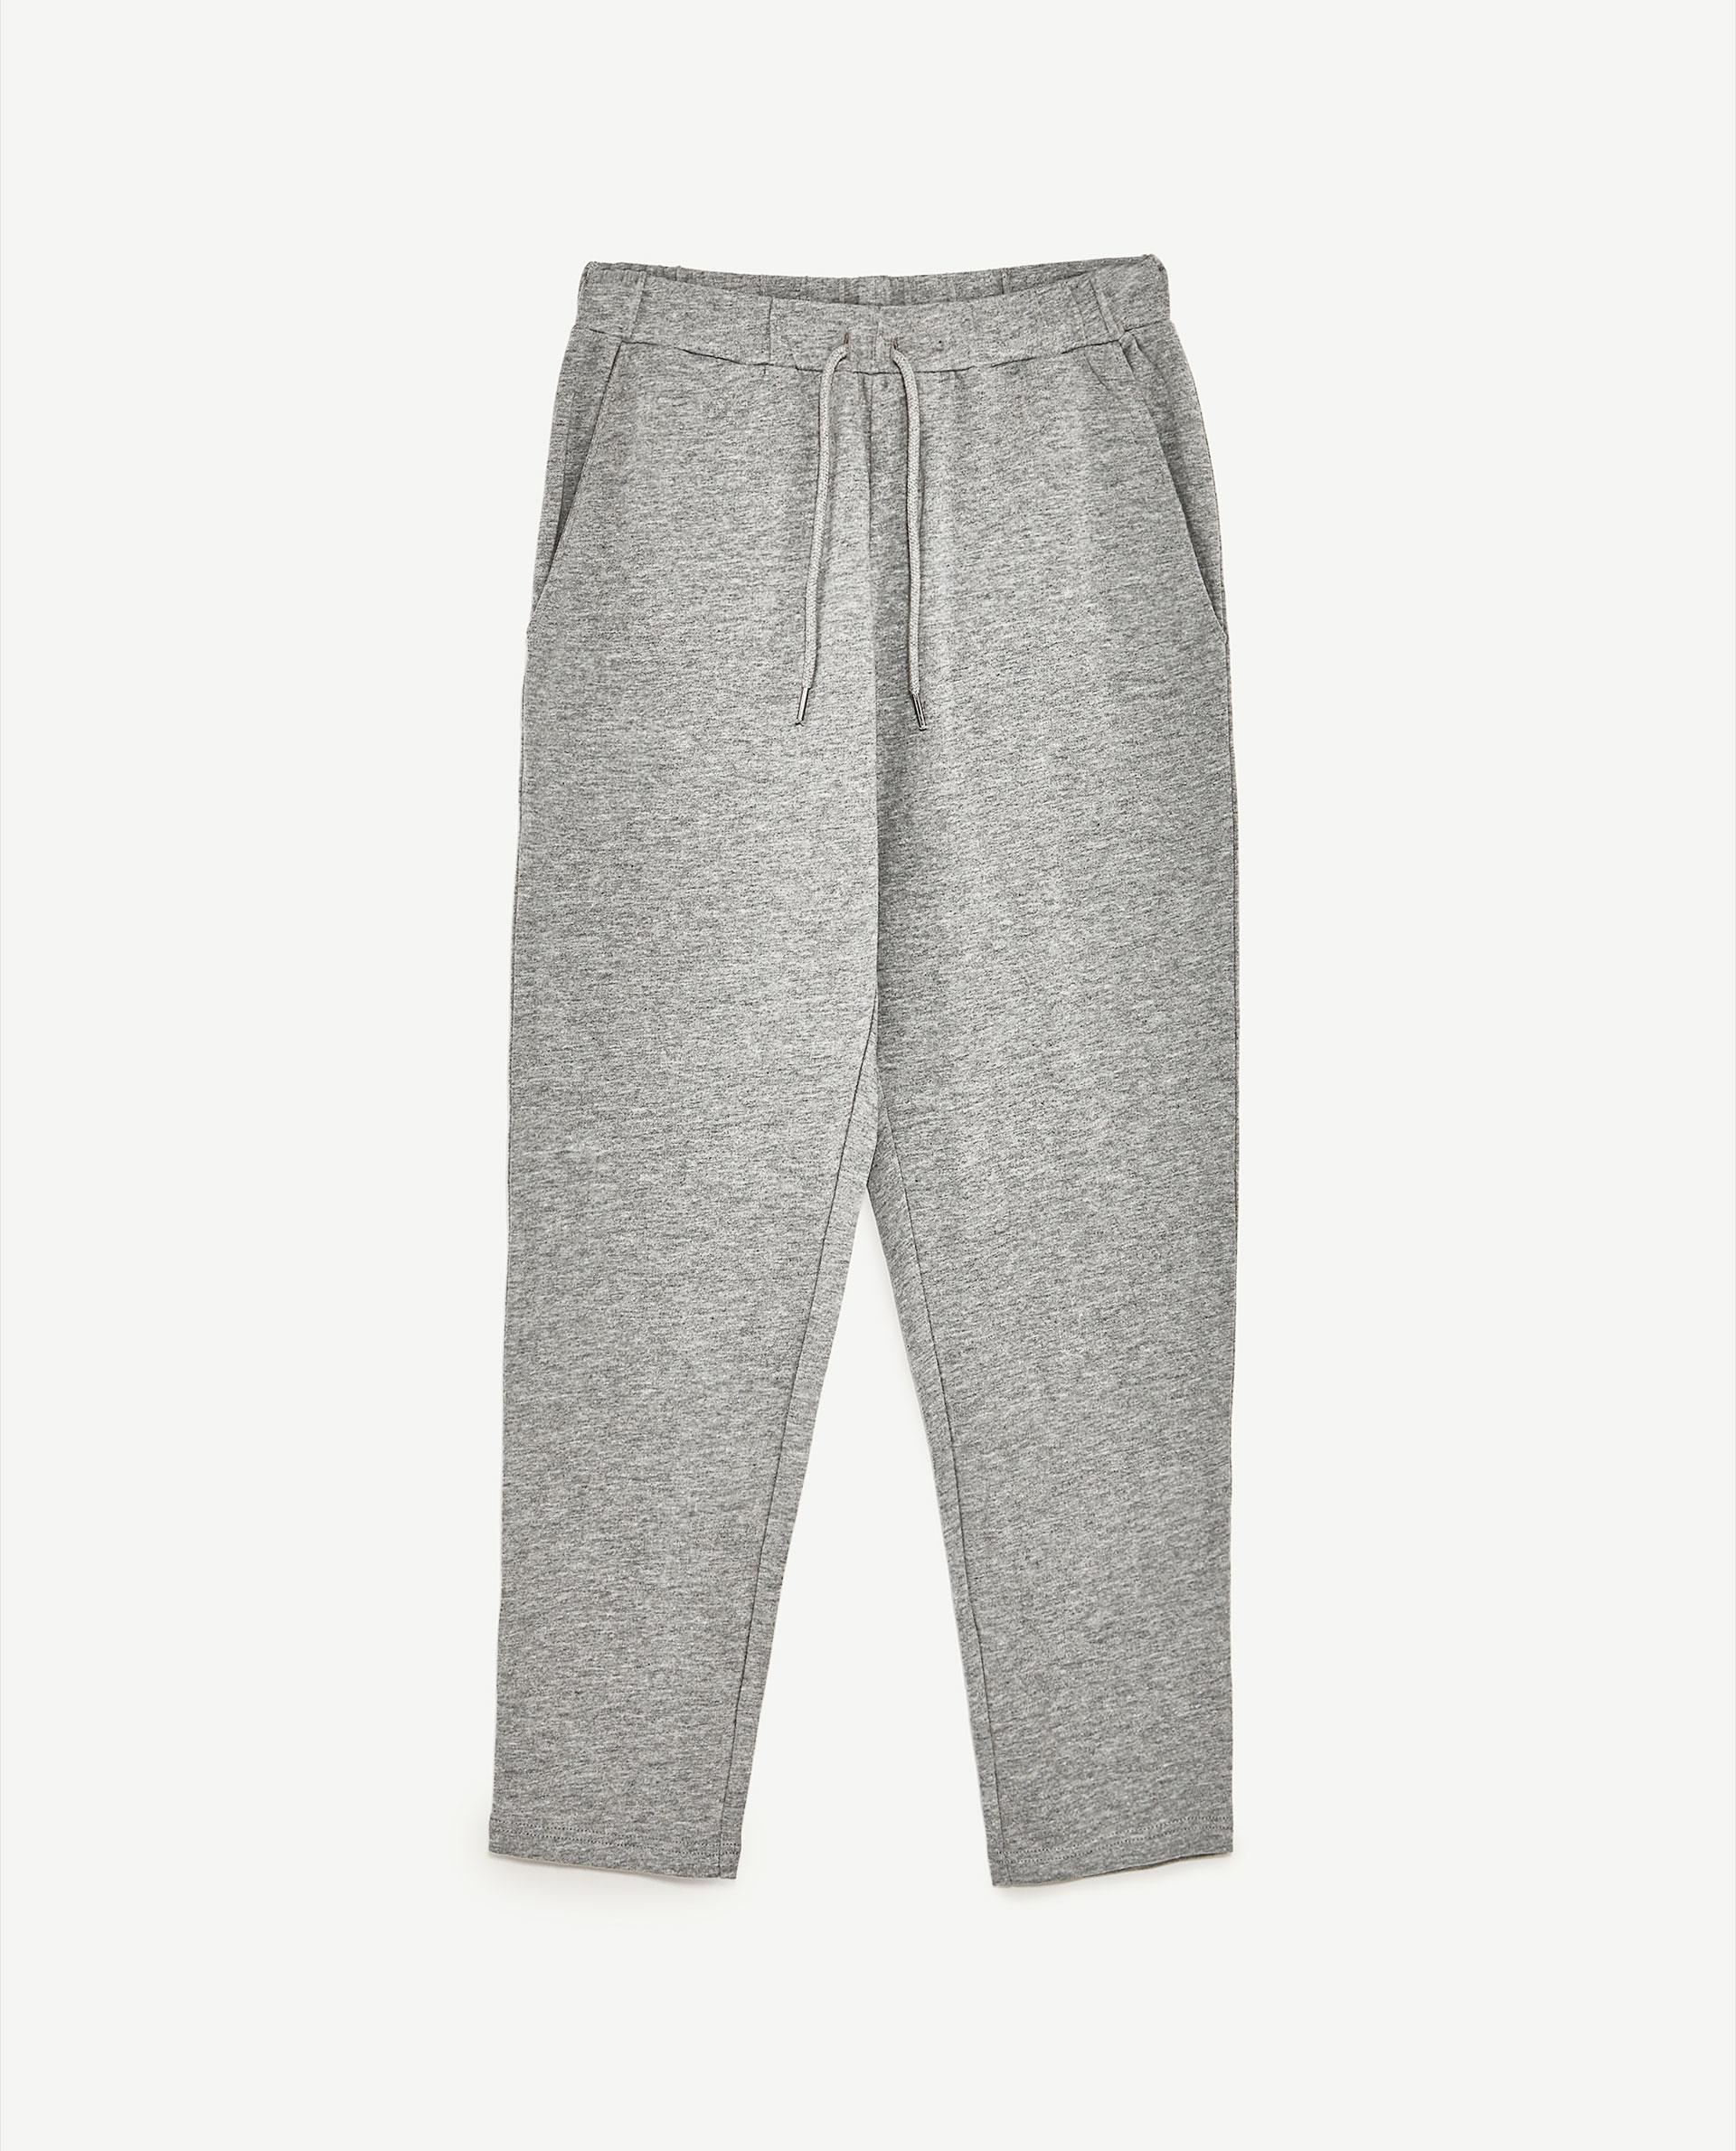 Zara Jogger Trousers in Gray | Lyst